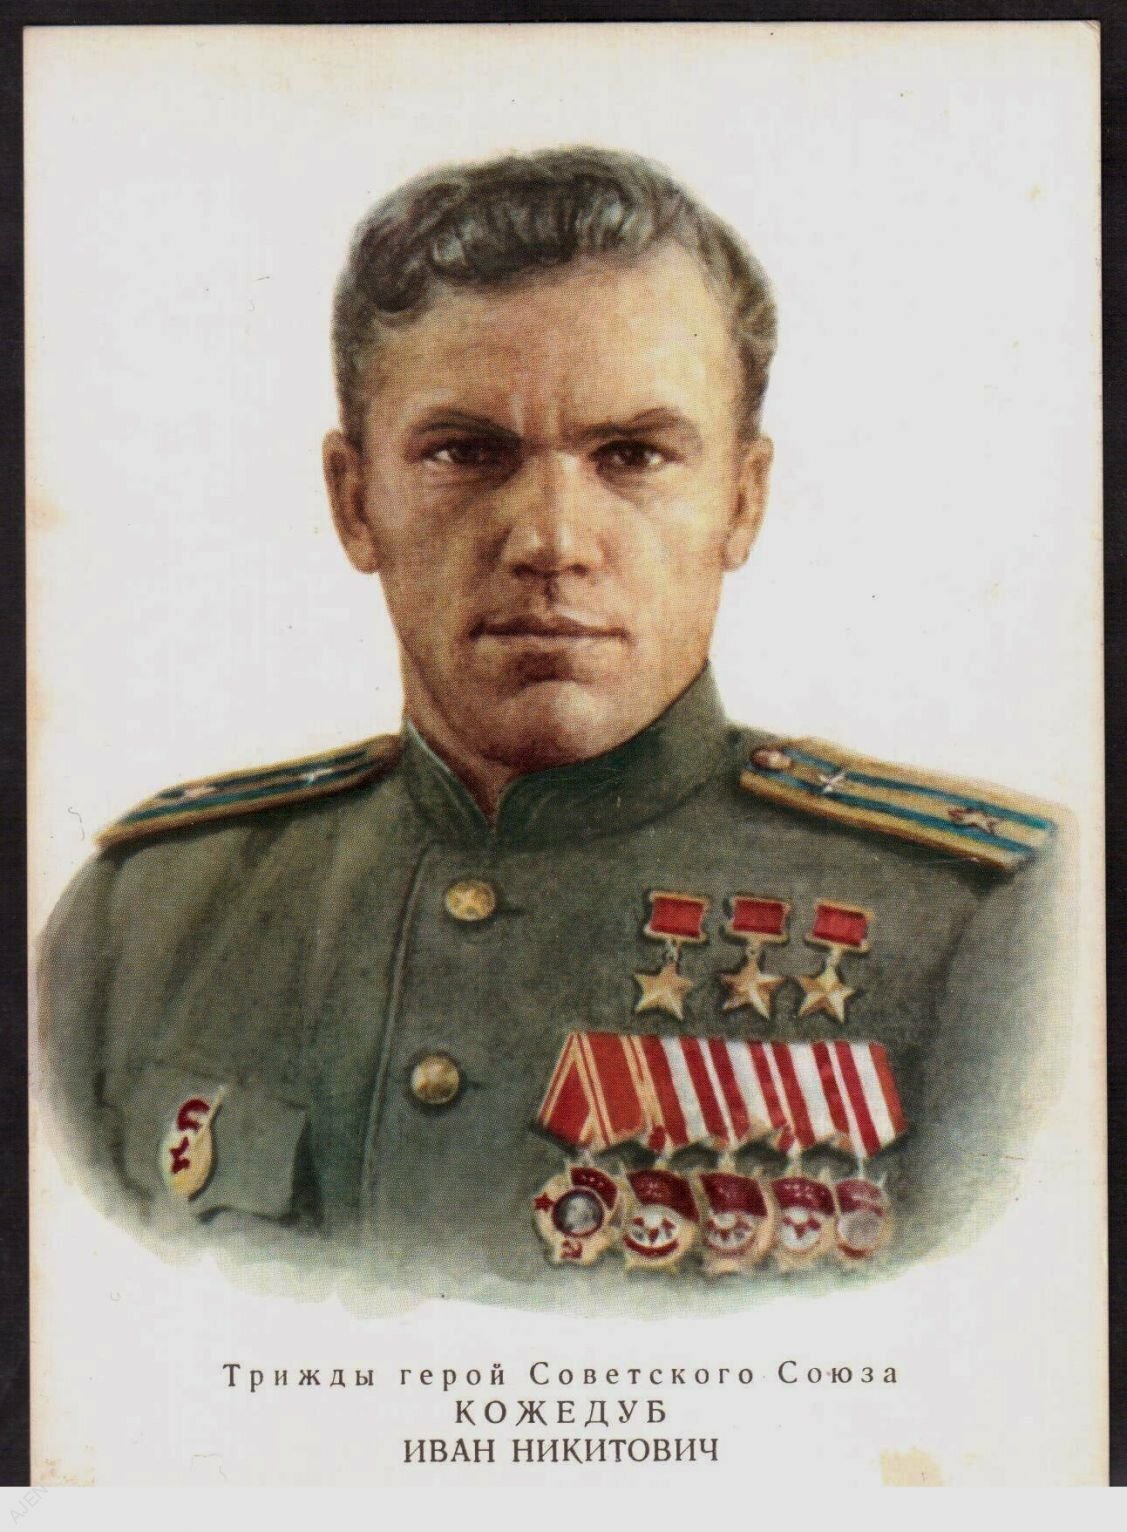 Кожедуб герой советского Союза